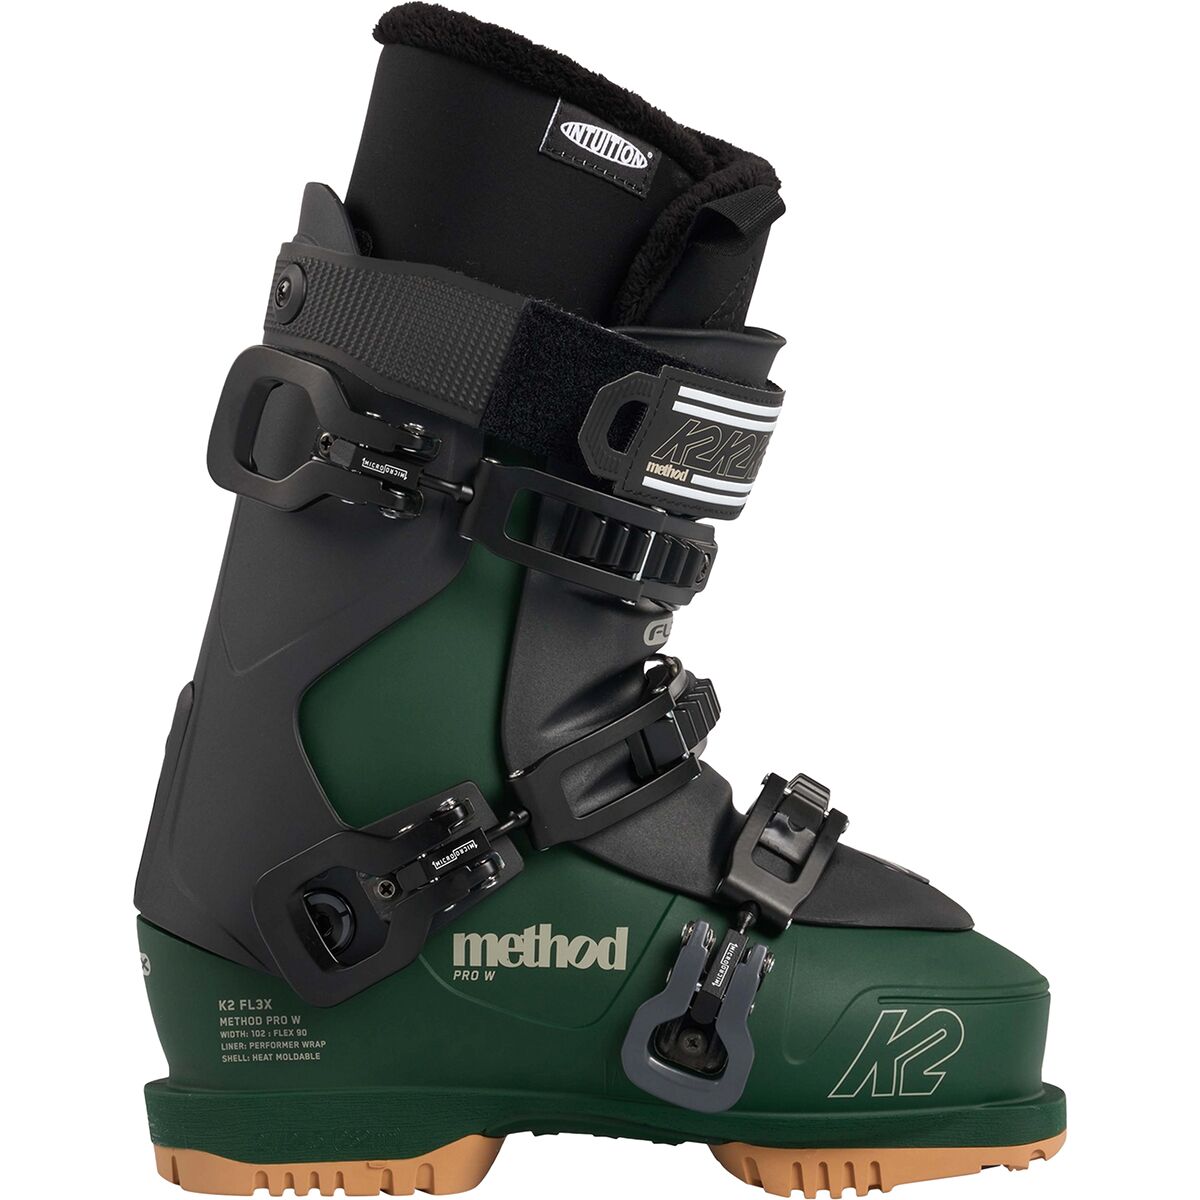 K2 Method Pro Ski Boot - 2023 - Women's